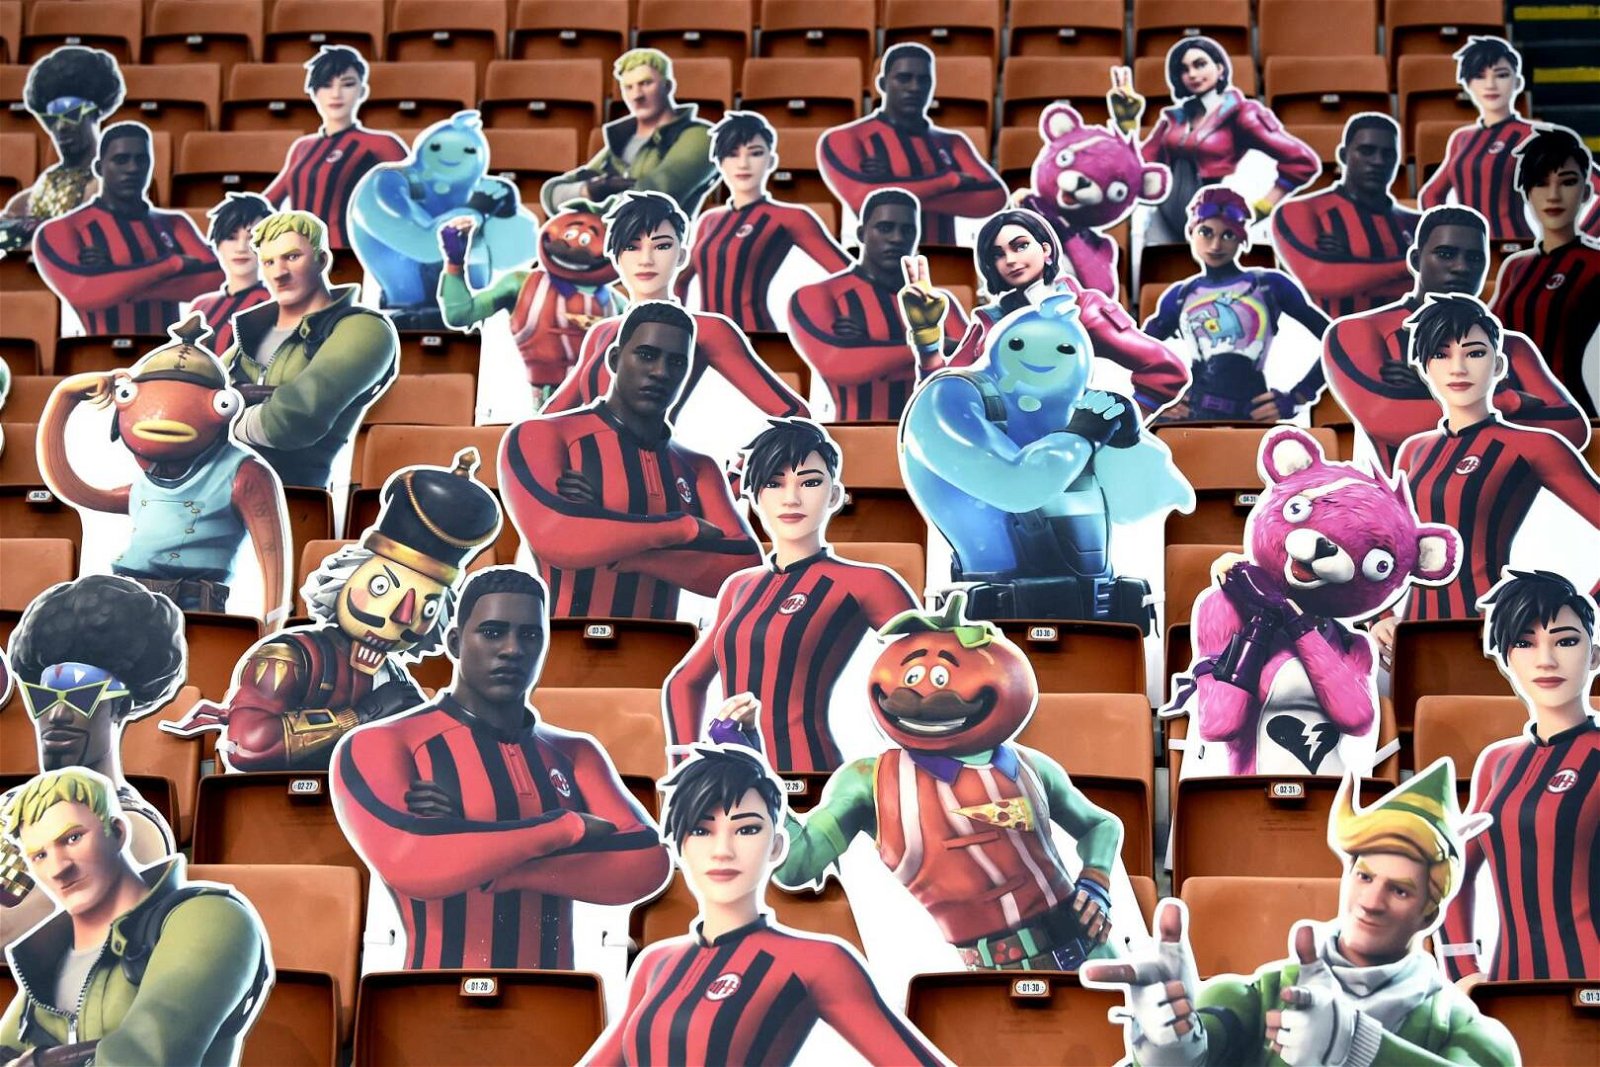 Immagine di Fortnite: gli europei di calcio prenderanno vita nel titolo Epic Games